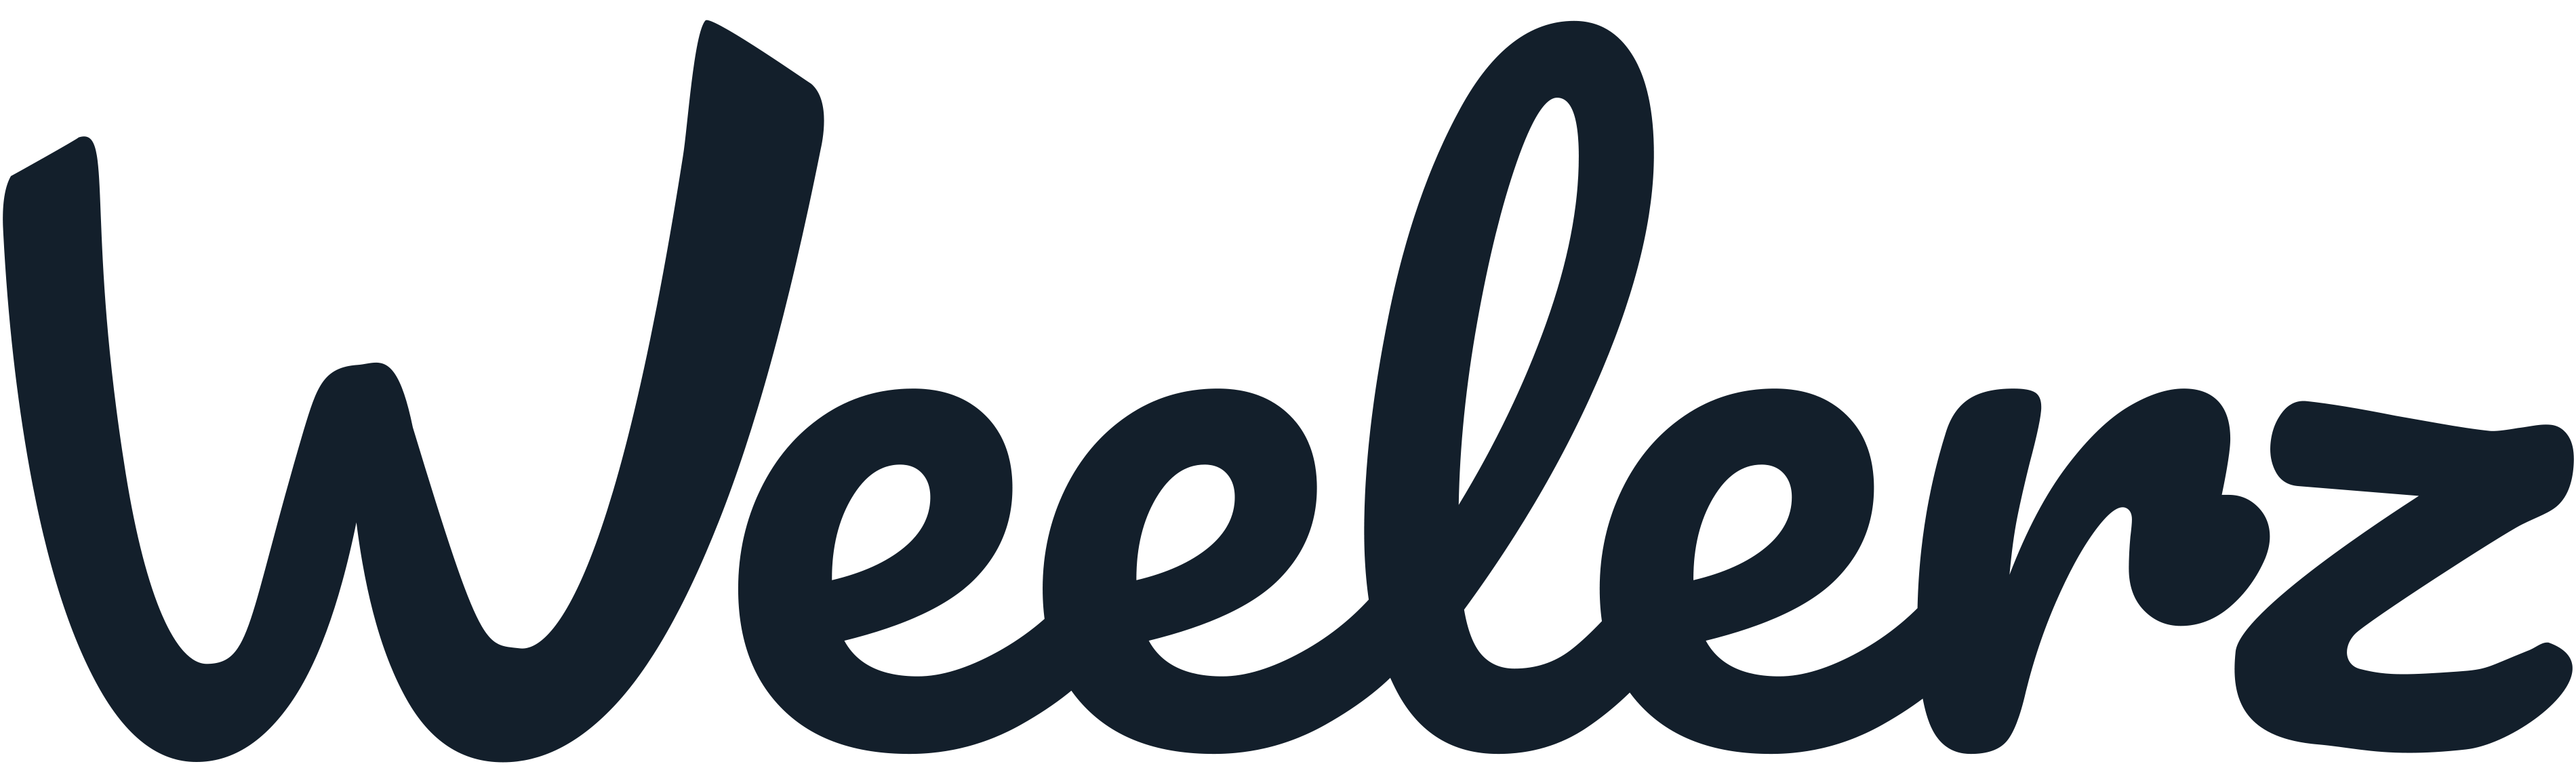 Weelerz-logo_trnsprnt1